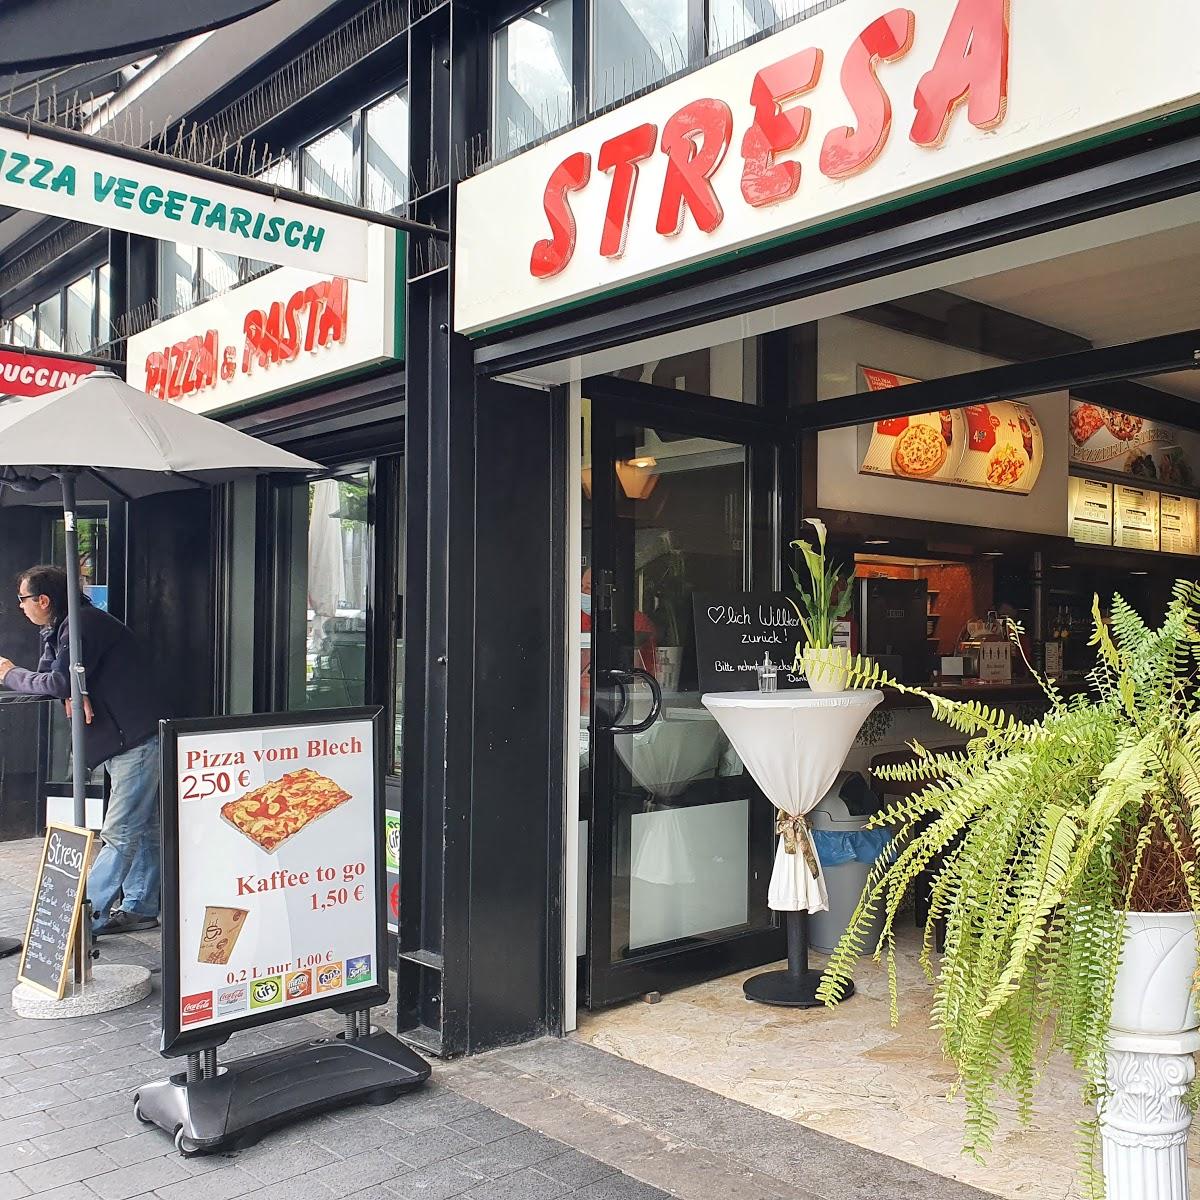 Restaurant "Stresa Pizzeria" in Braunschweig